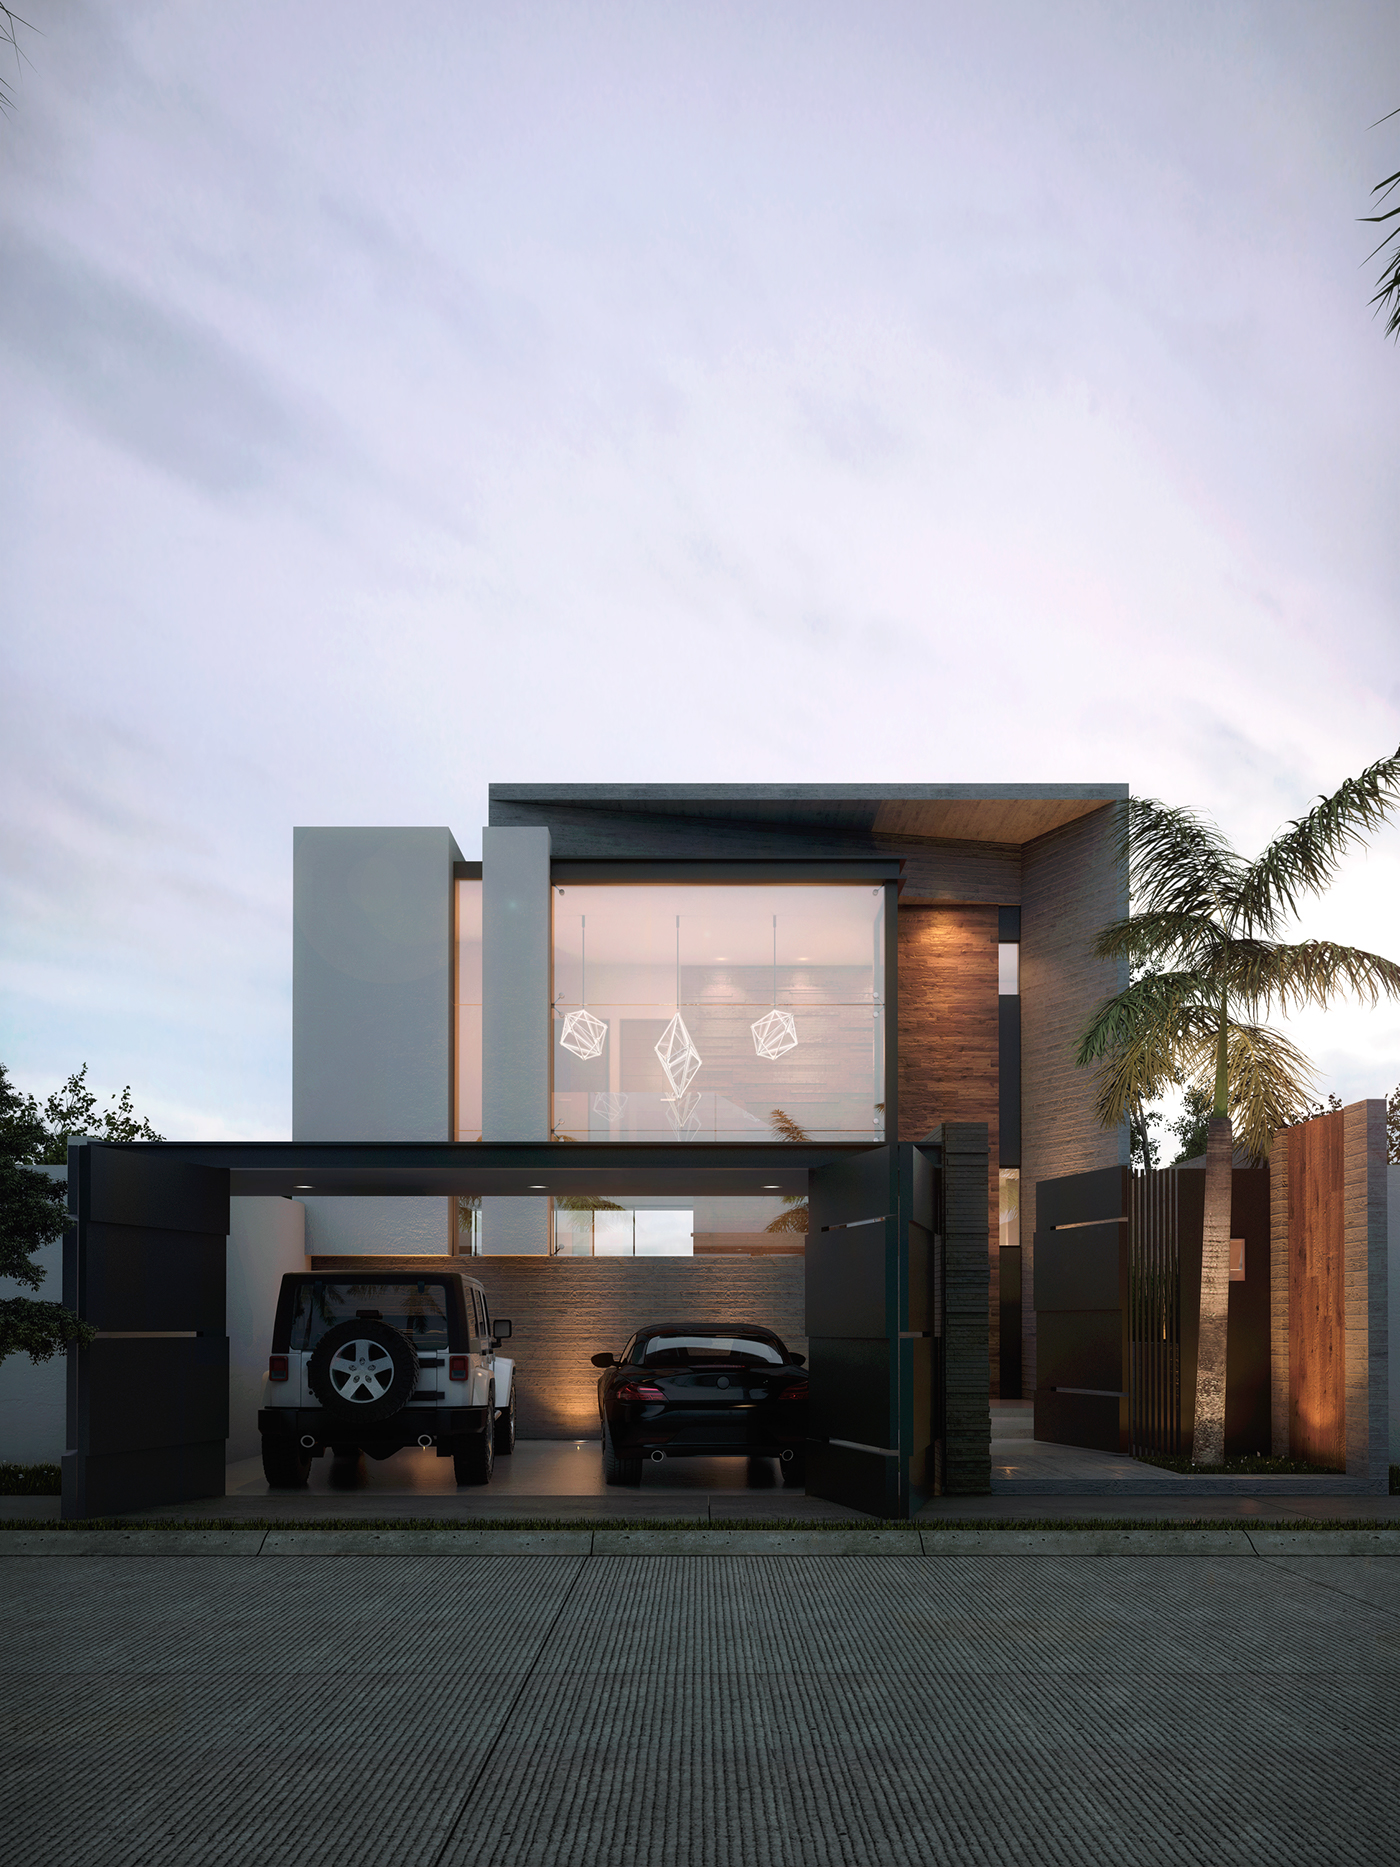 viz house Render residential SketchUP V-ray design exterior